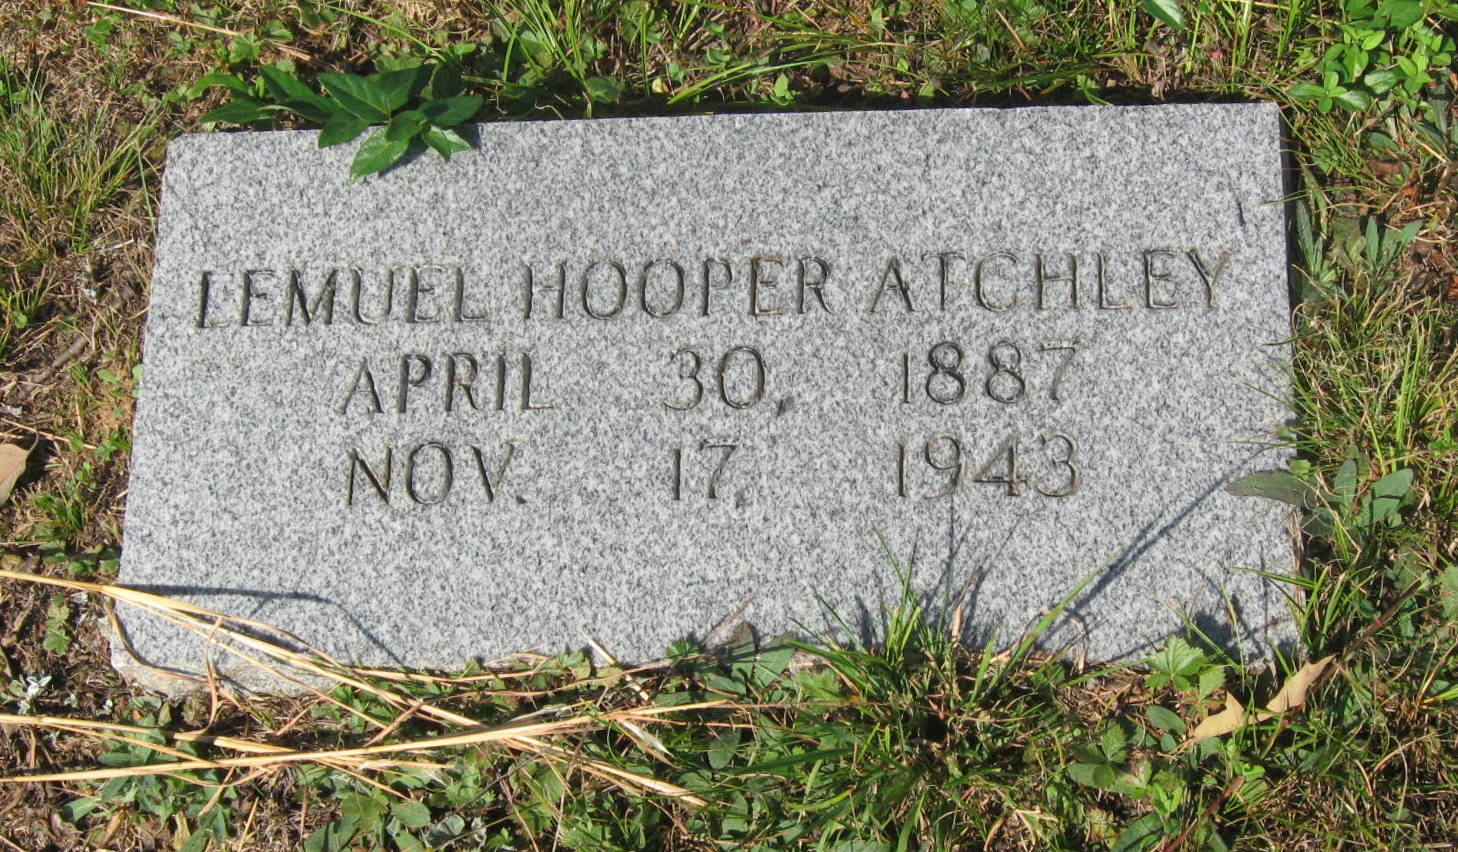 Hooper Hooper Atchley